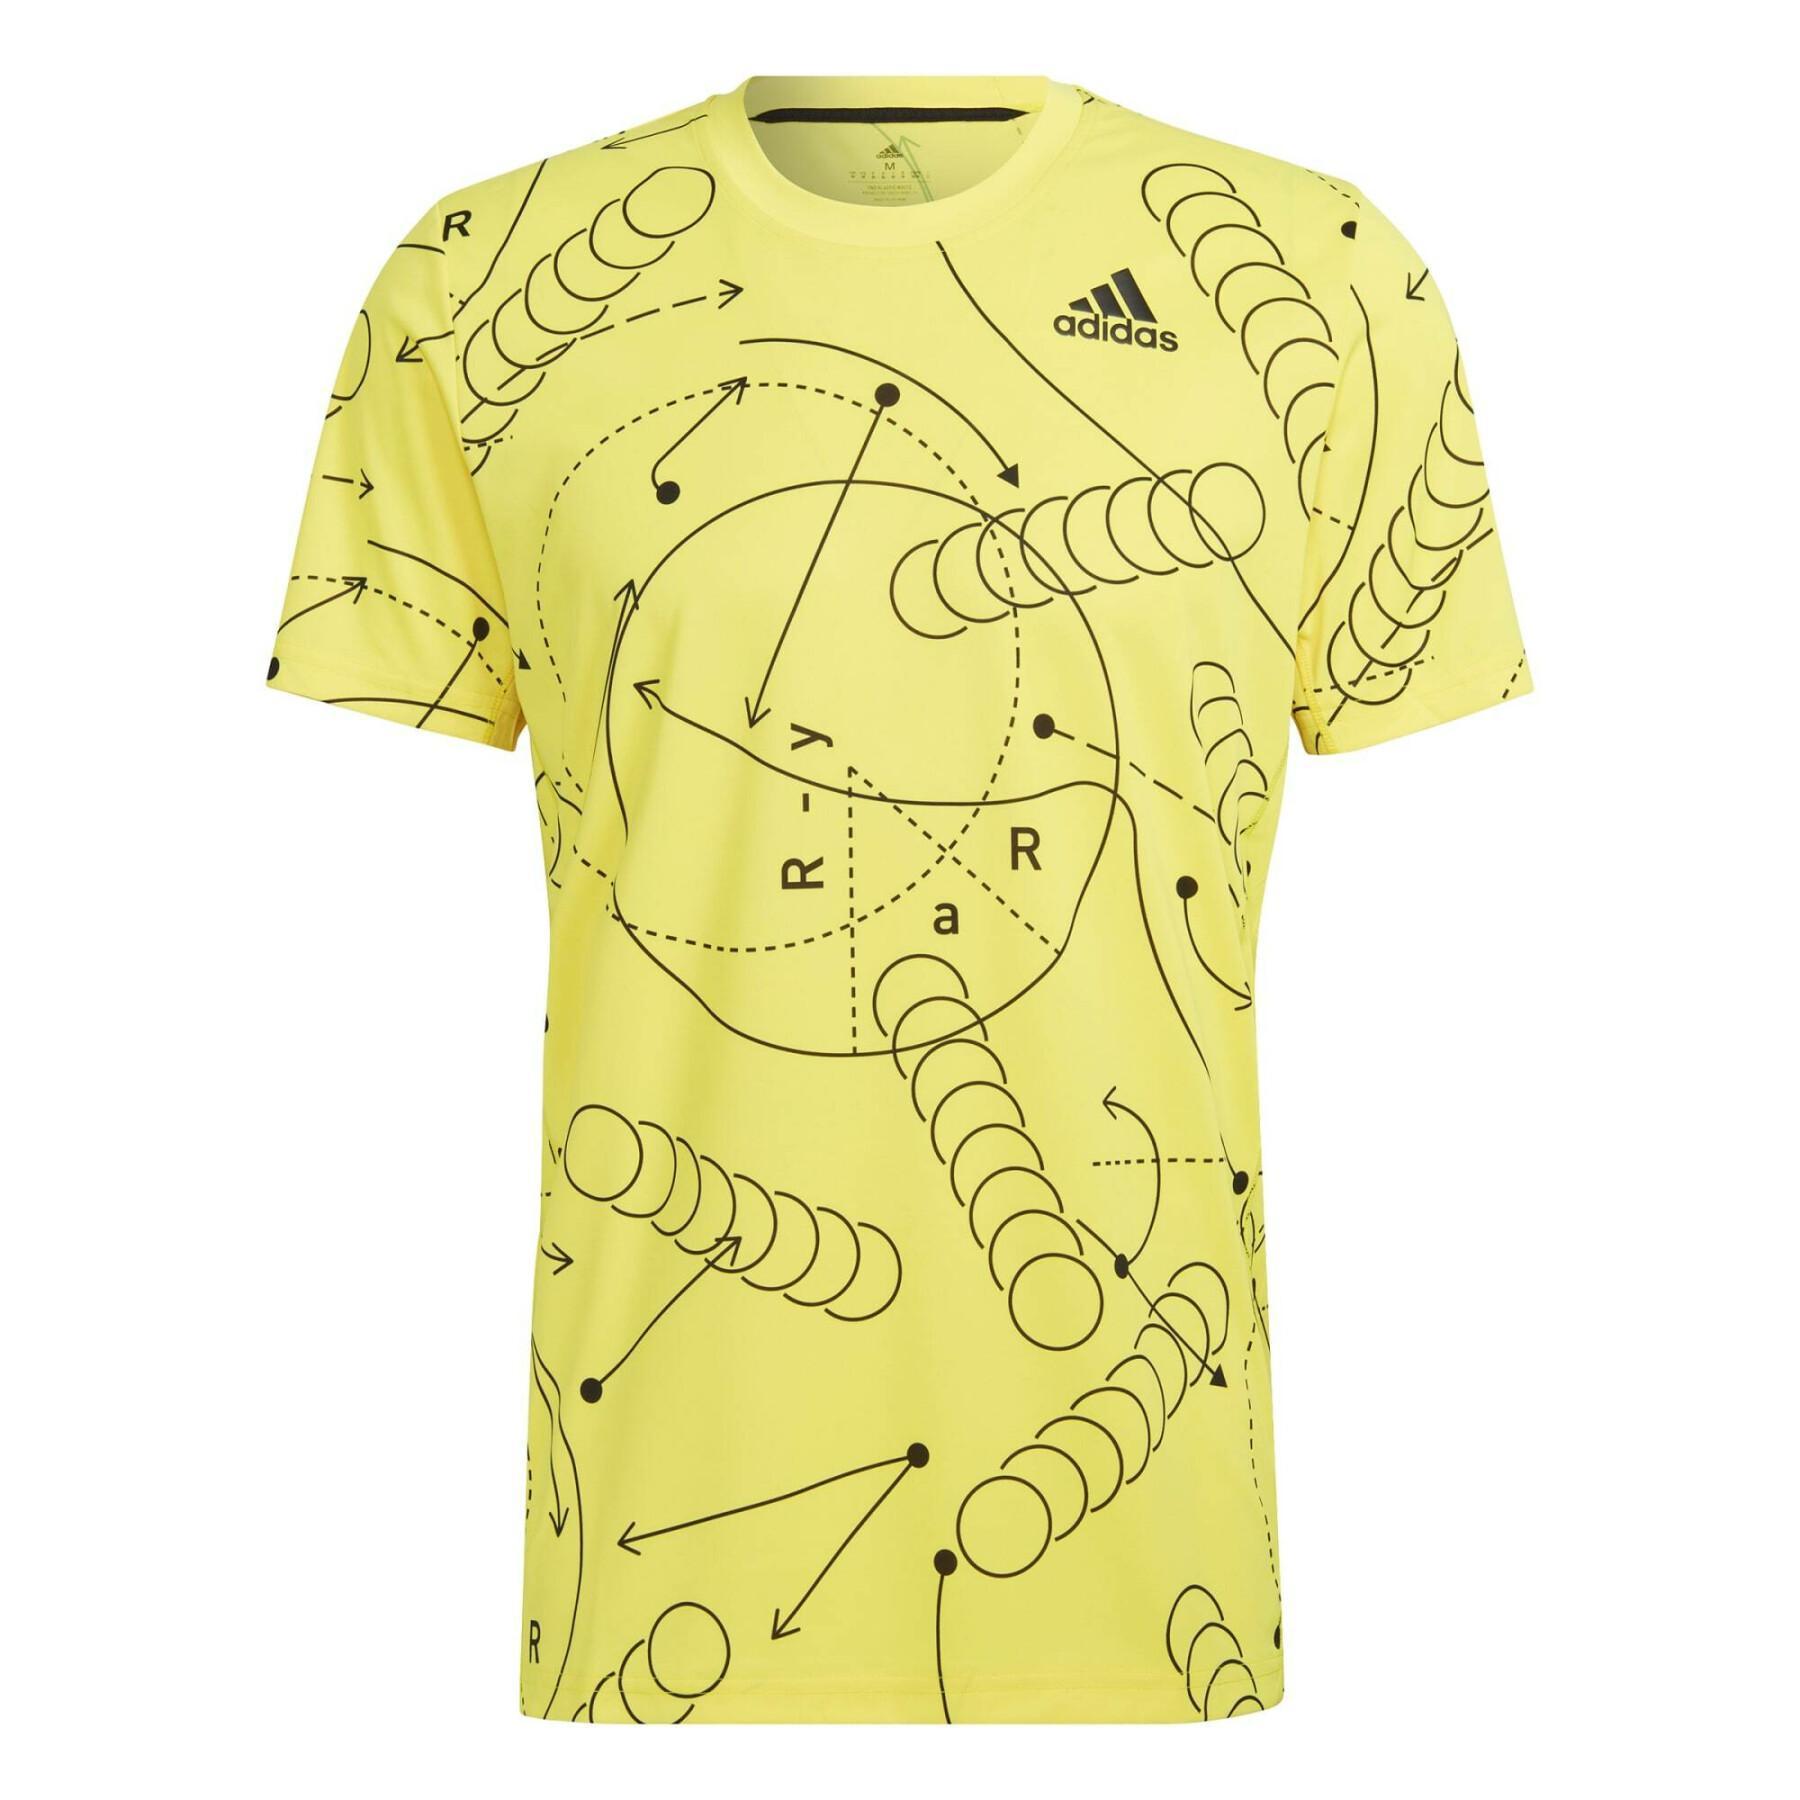 Camiseta del club de tenis con estampado adidas